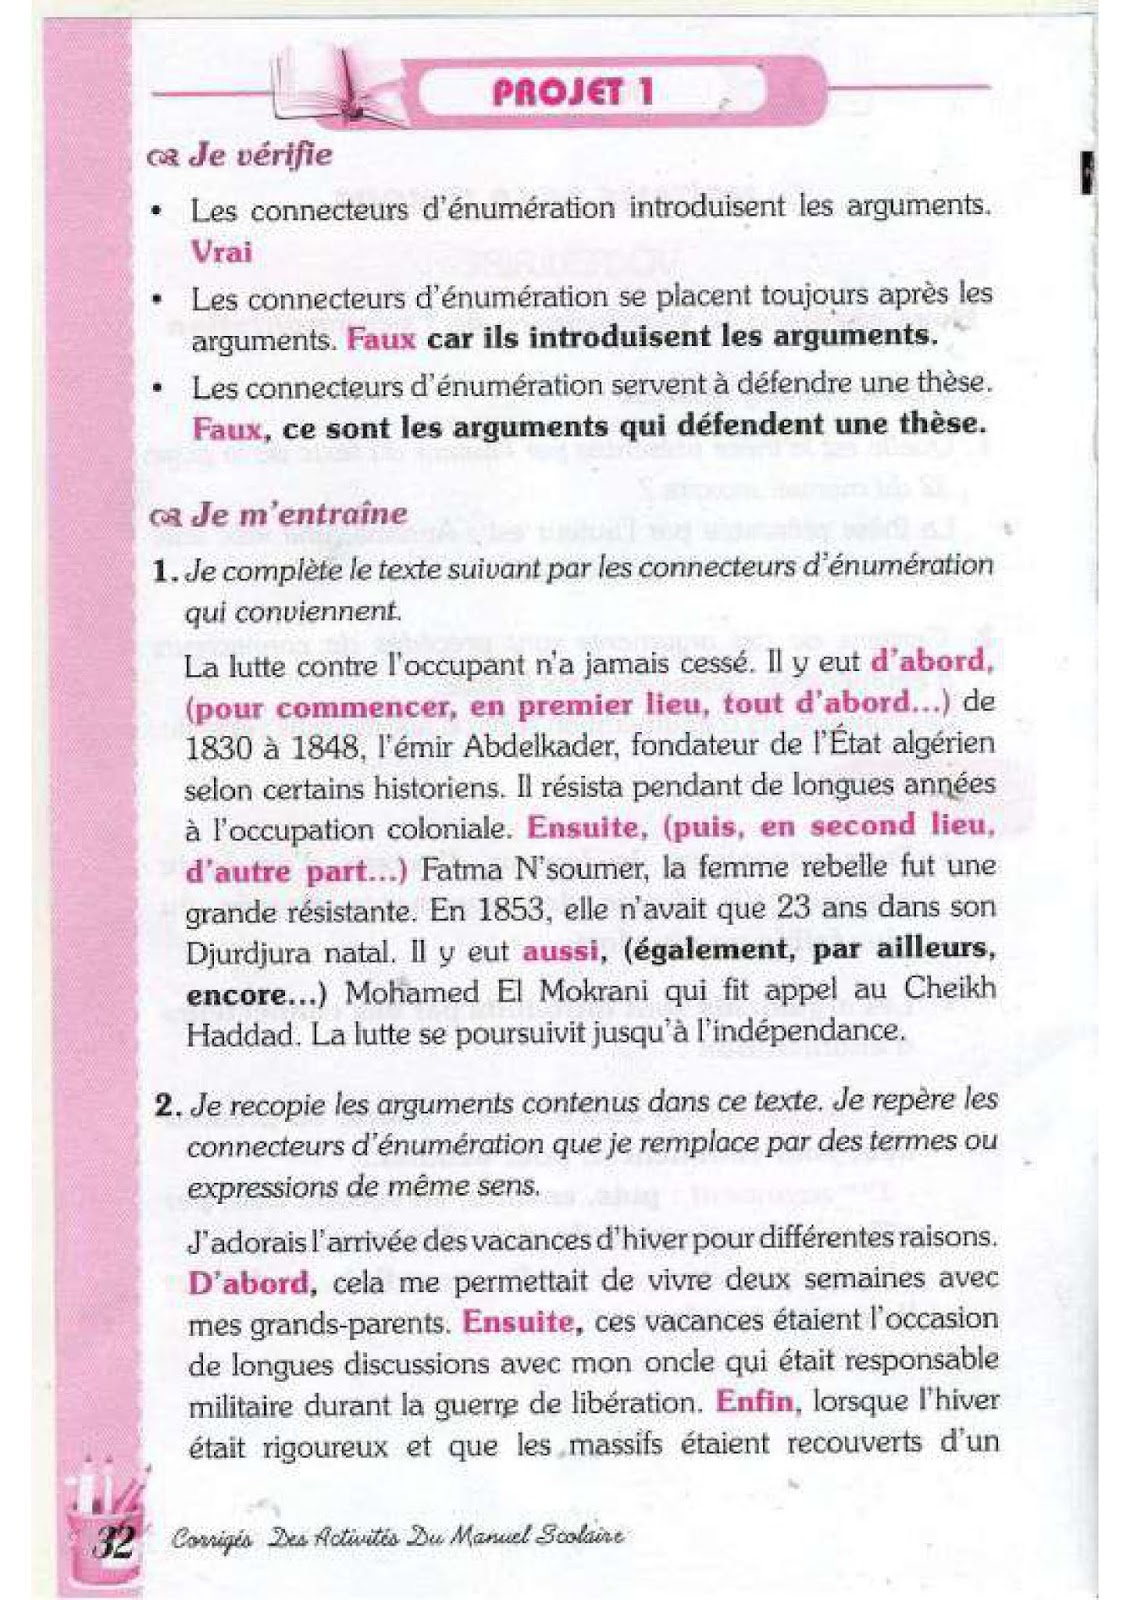 حل تمارين صفحة 33 الفرنسية للسنة الرابعة متوسط - الجيل الثاني